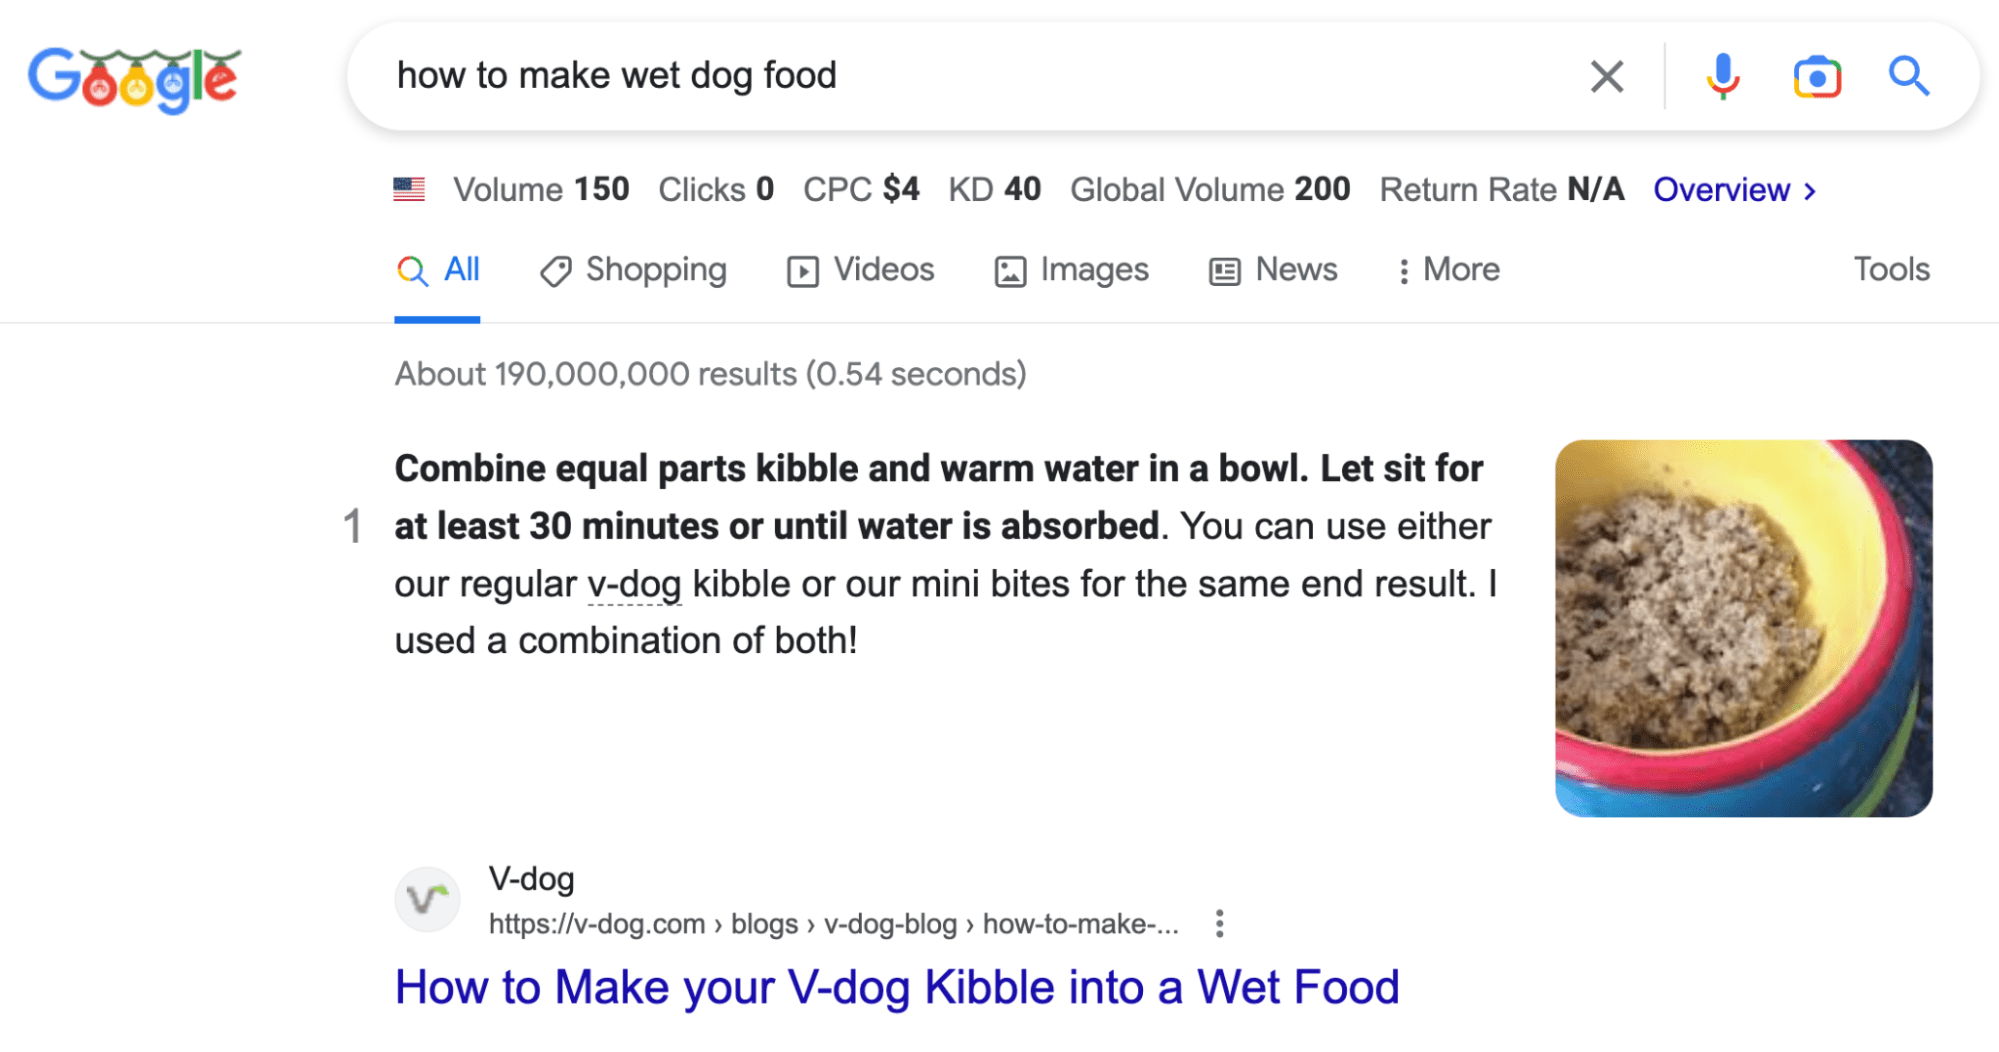 Resultado de búsqueda en Google para "how to make wet dog food" ("cómo hacer comida húmeda para perros")